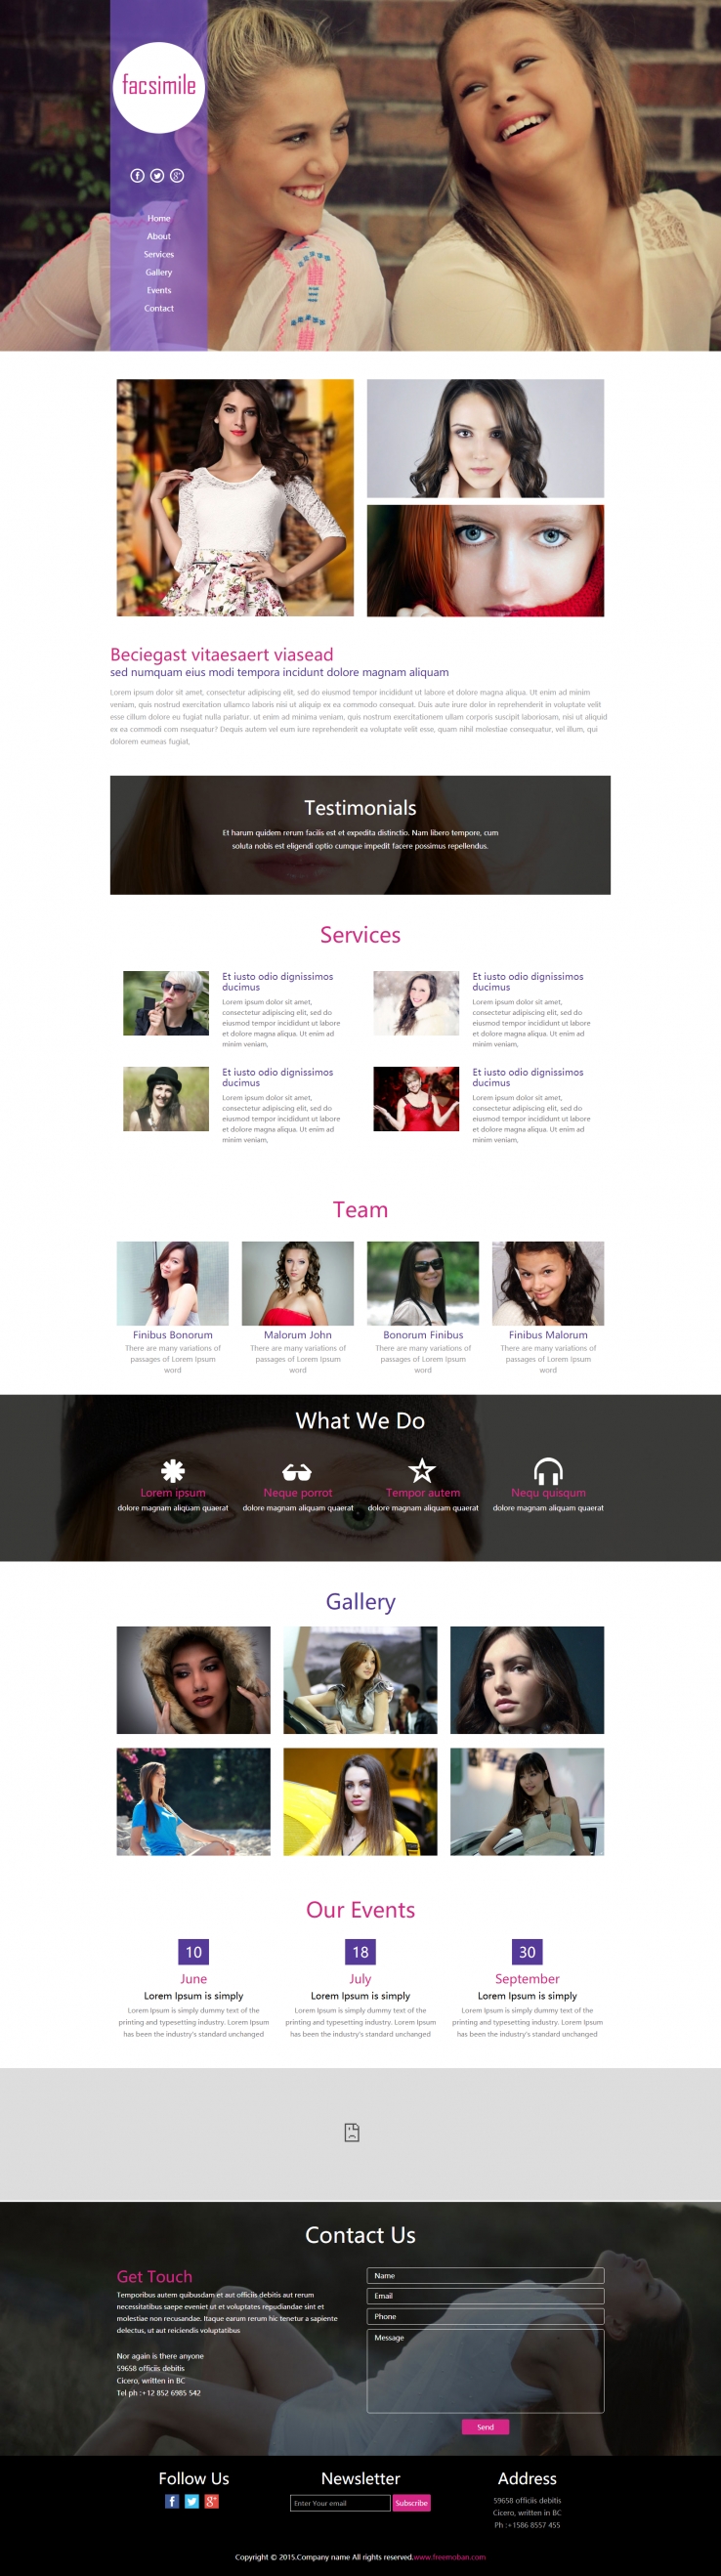 紫色欧美风格的女性摄影写真网页模板下载